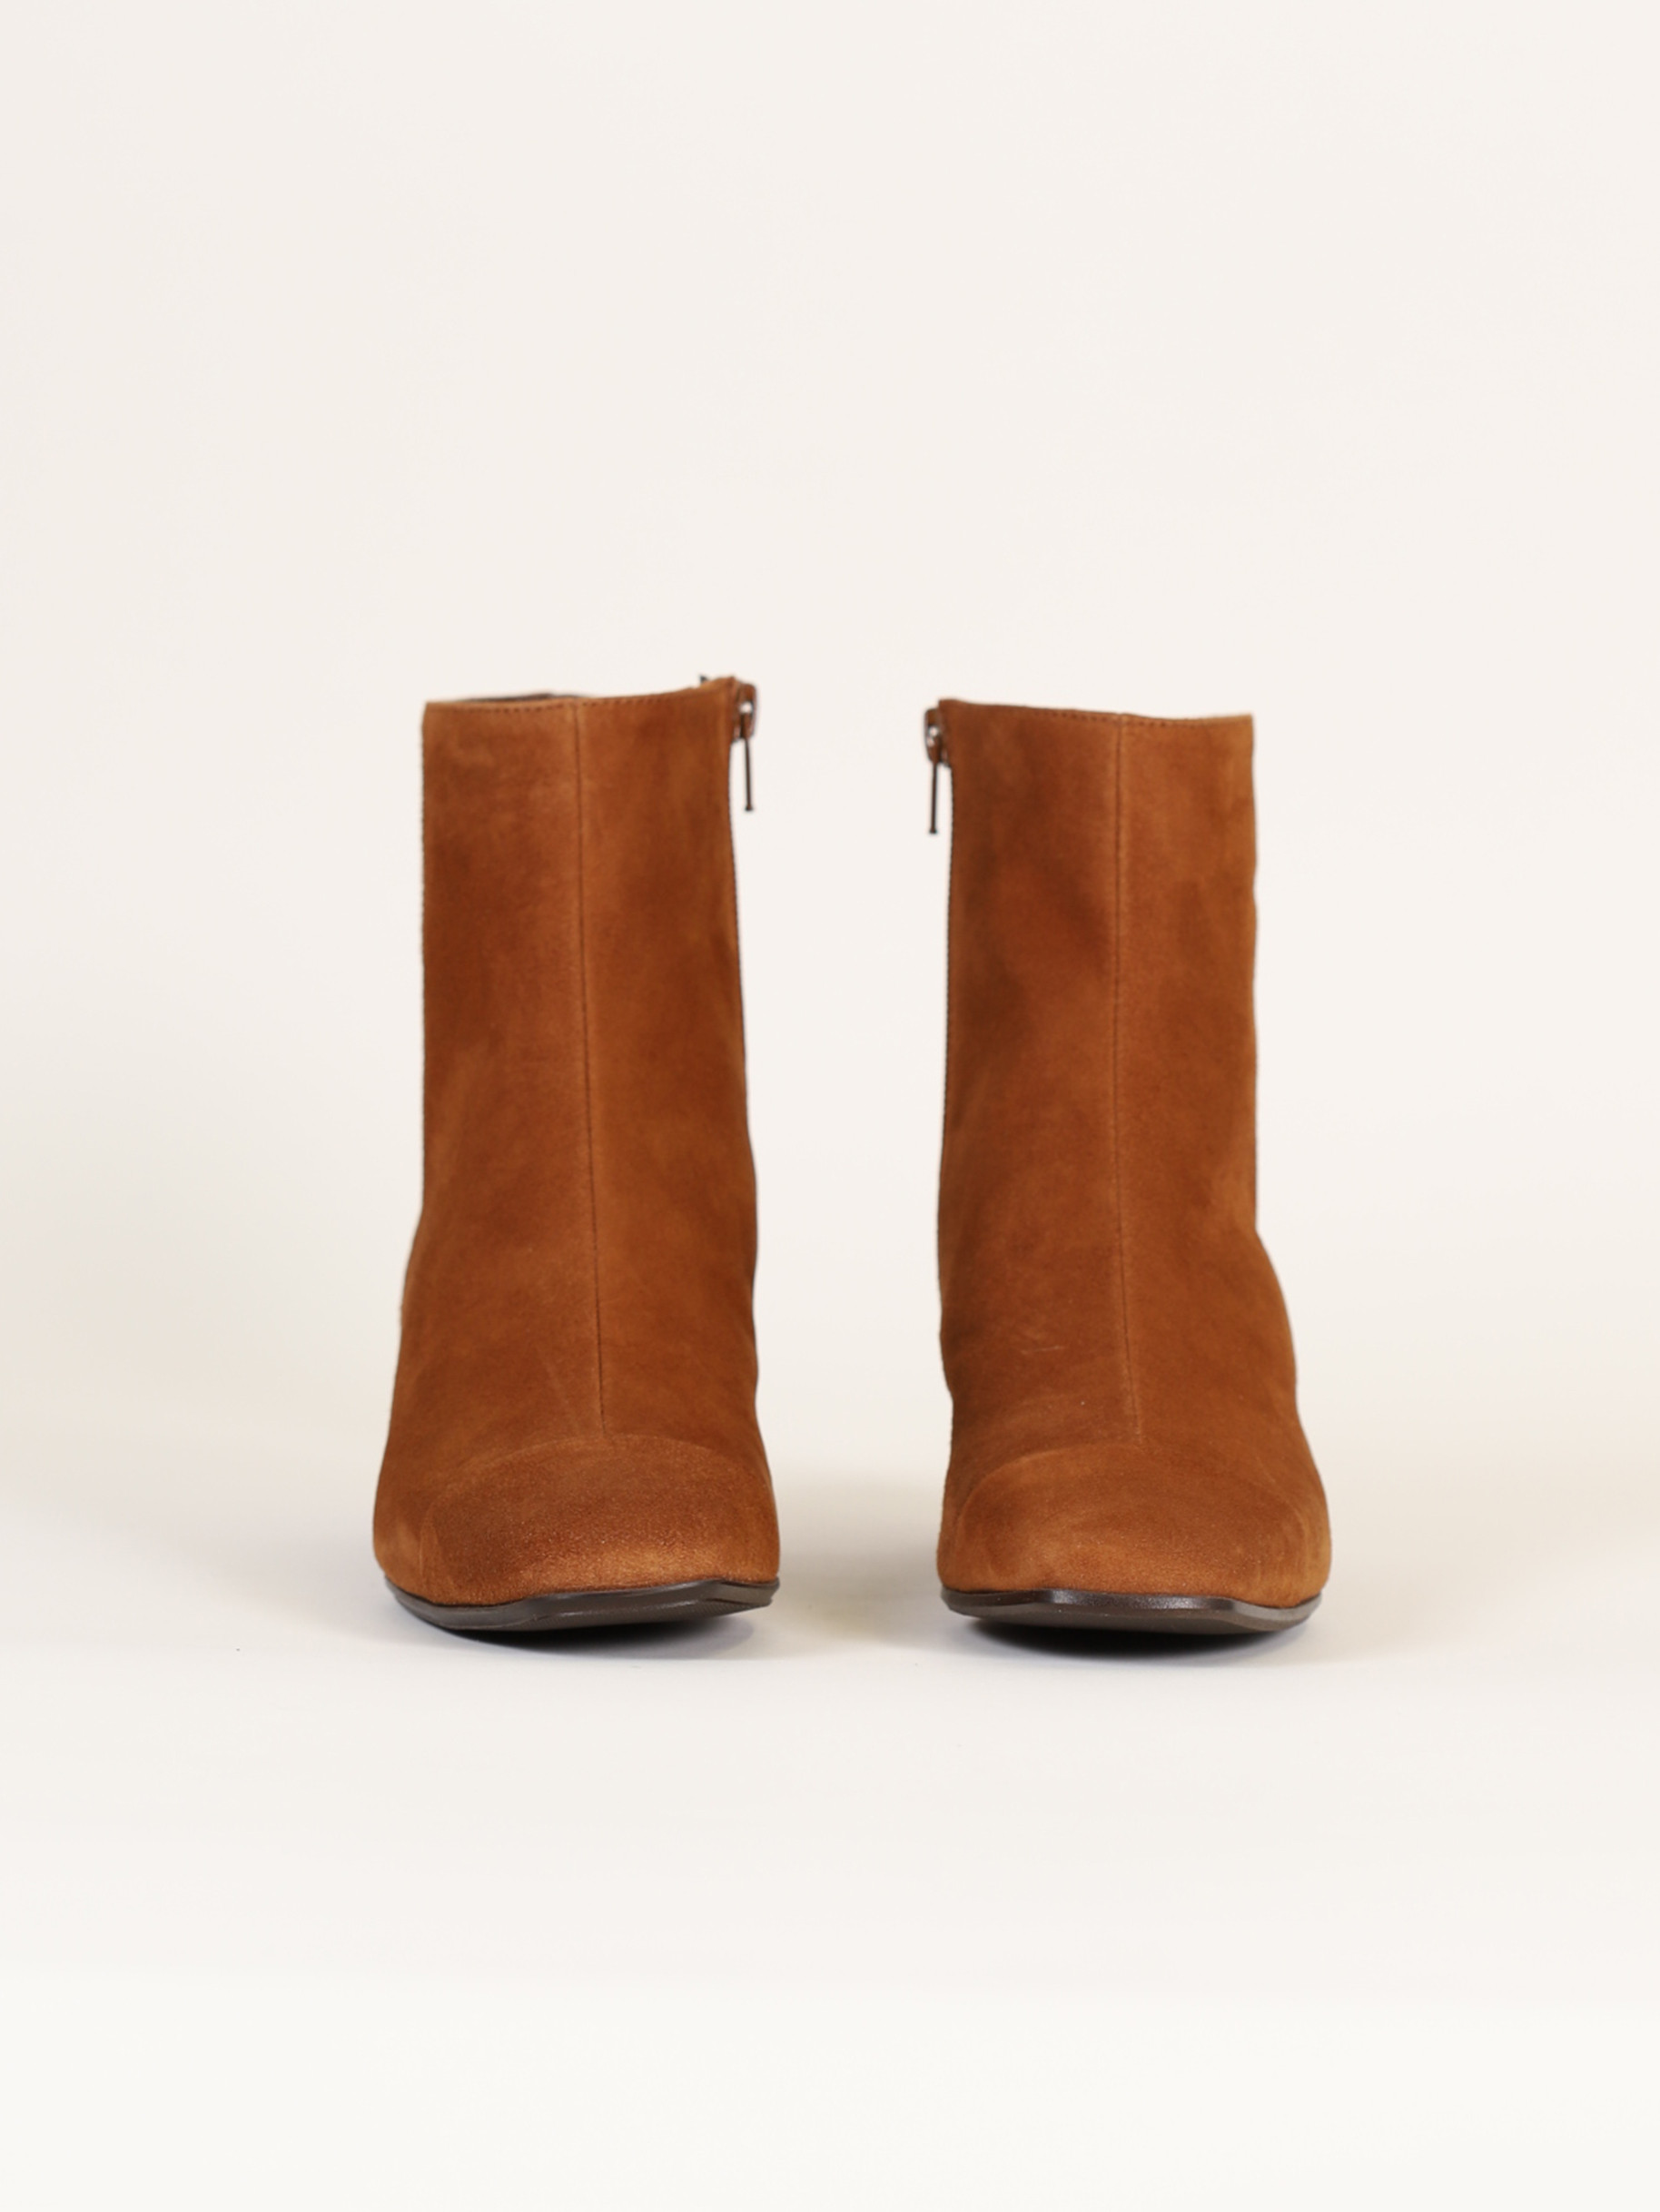 ESTIME camel suede leather ankle boots | Carel Paris Shoes